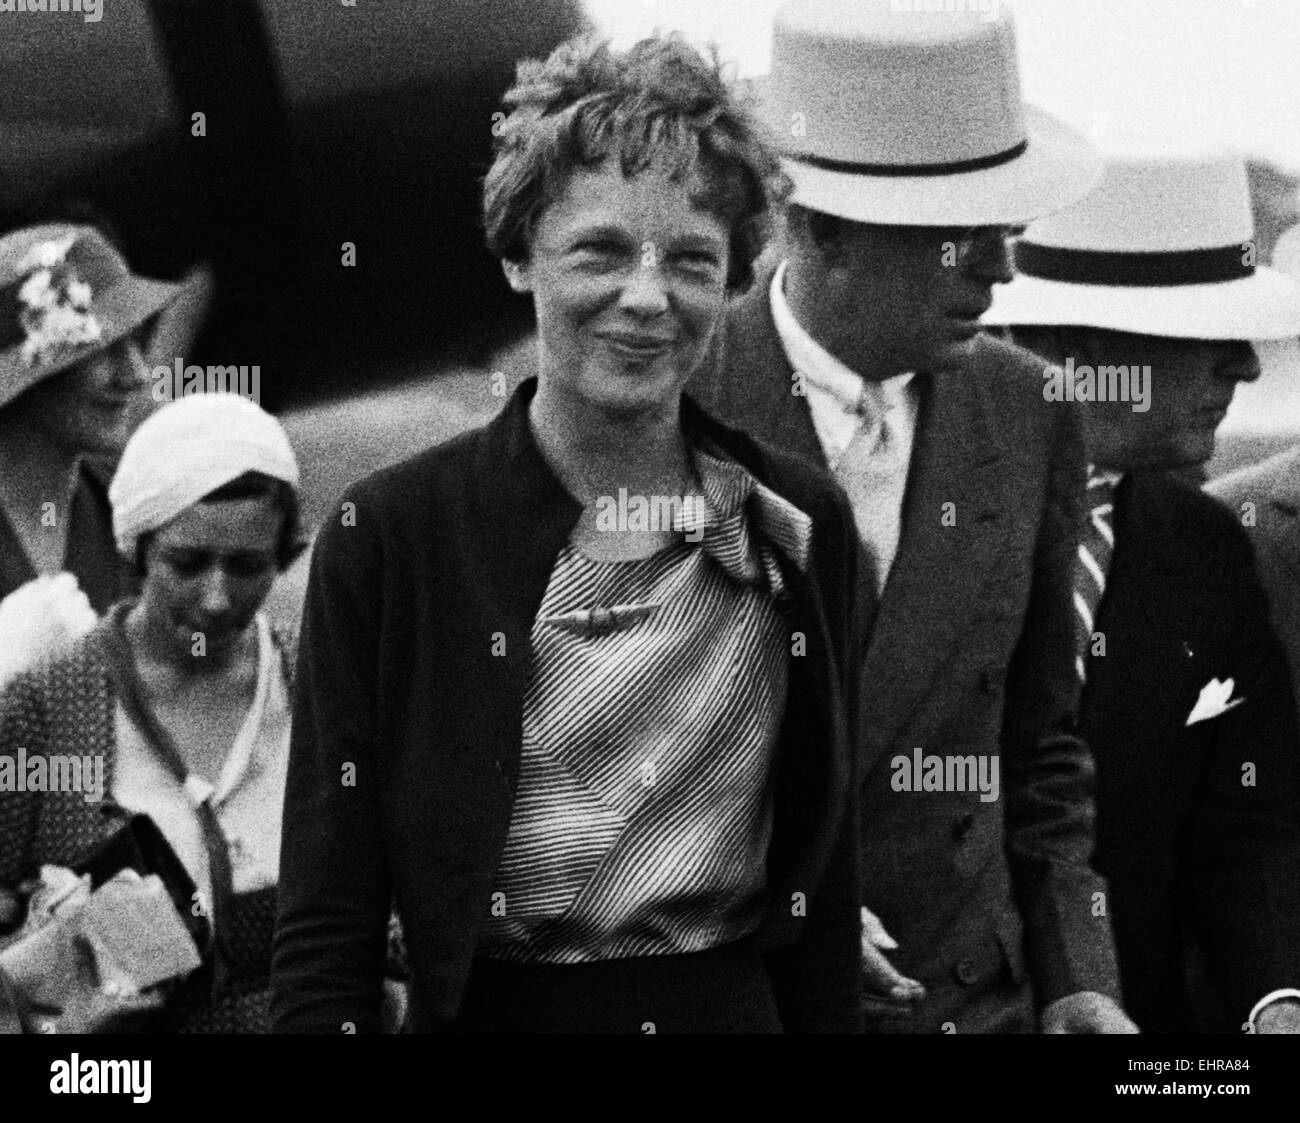 Photo d'époque de la pionnière et auteure de l'aviation américaine Amelia Earhart (1897 – déclarée morte en 1939) – Earhart et son navigateur Fred Noonan ont connu une célèbre disparition en 1937 alors qu'elle essayait de devenir la première femme à effectuer un vol de navigation du globe. Photo de Harris & Ewing prise en 1932. Banque D'Images